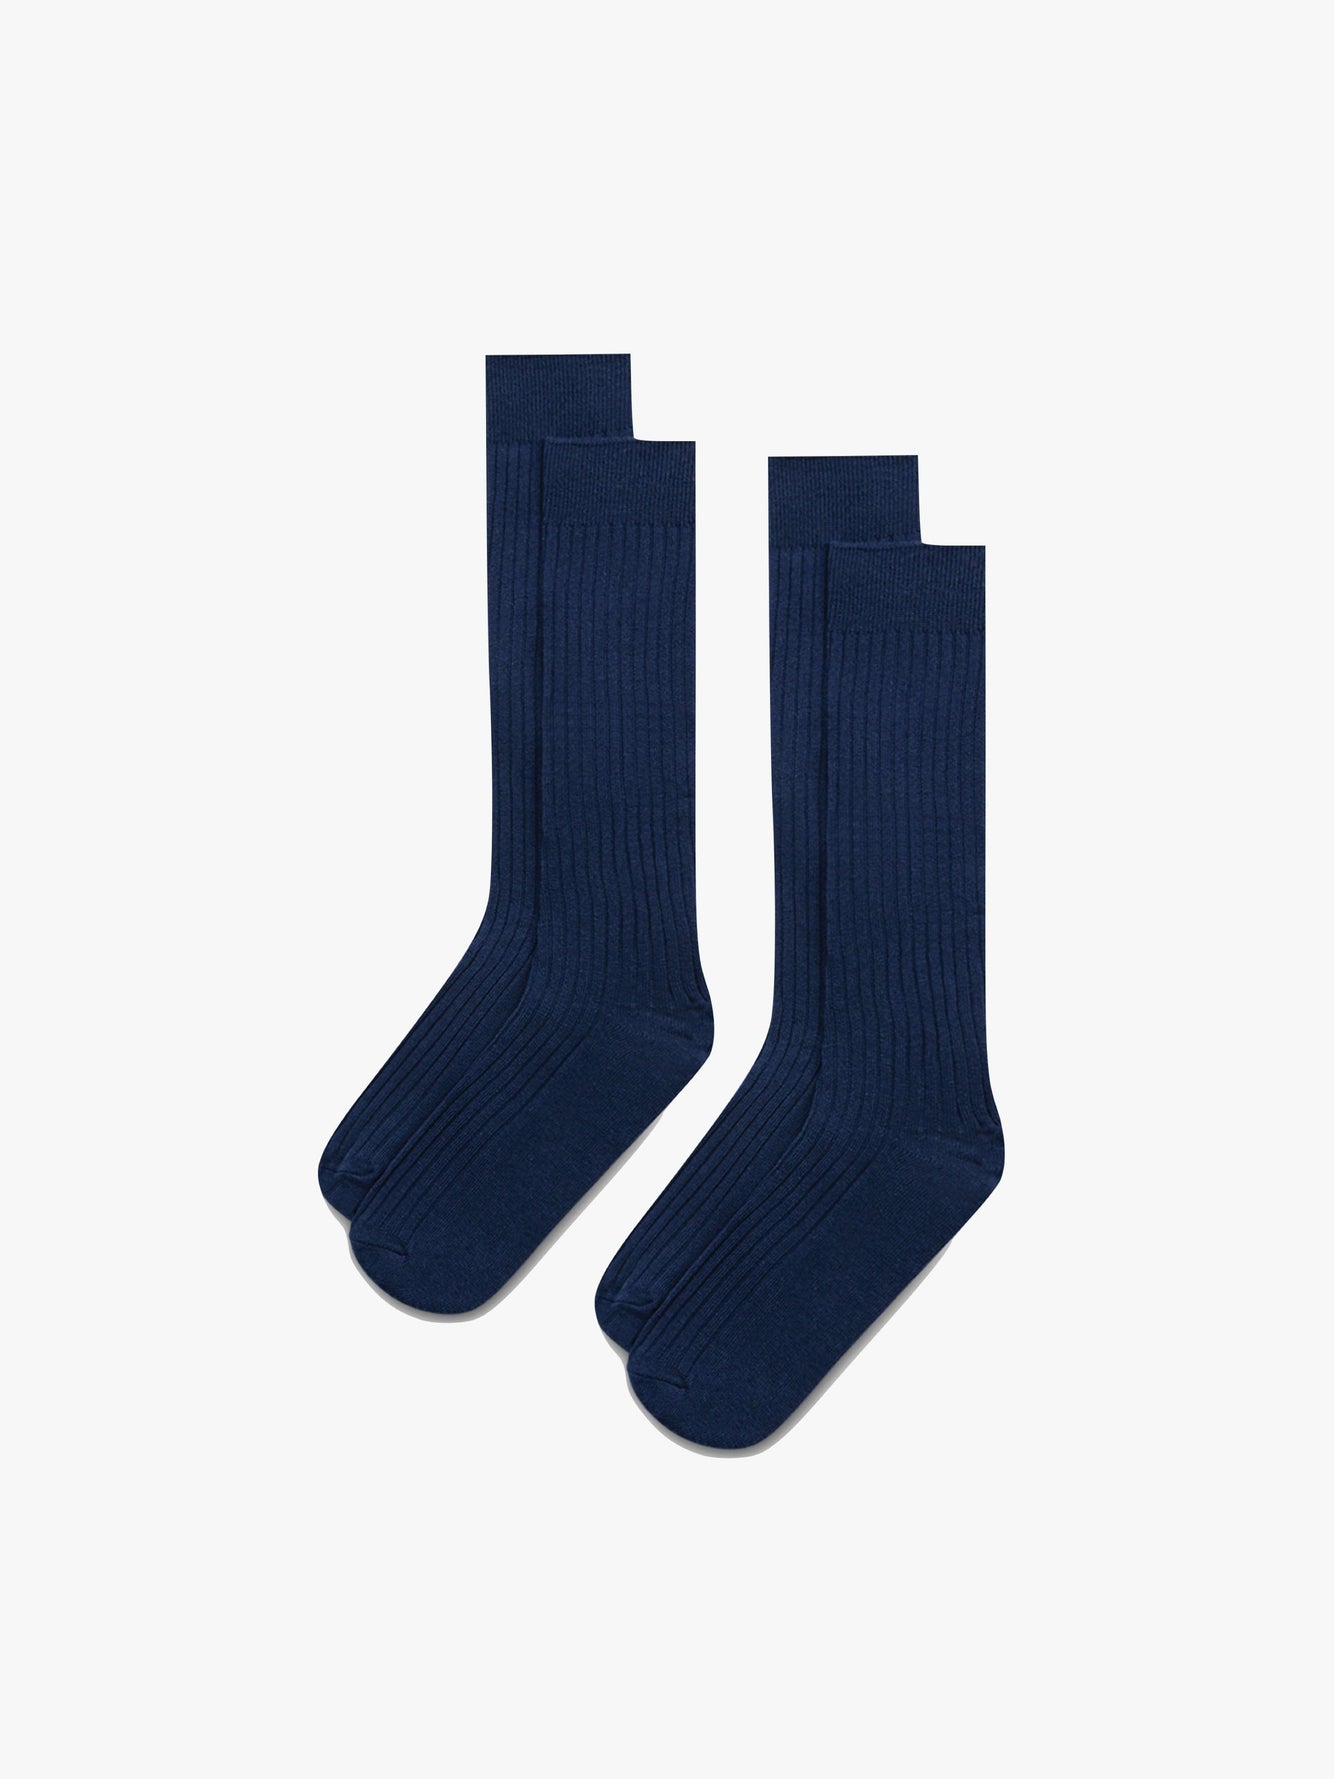 Grand Le Mar - Navy Ribbed Pima Cotton Socks